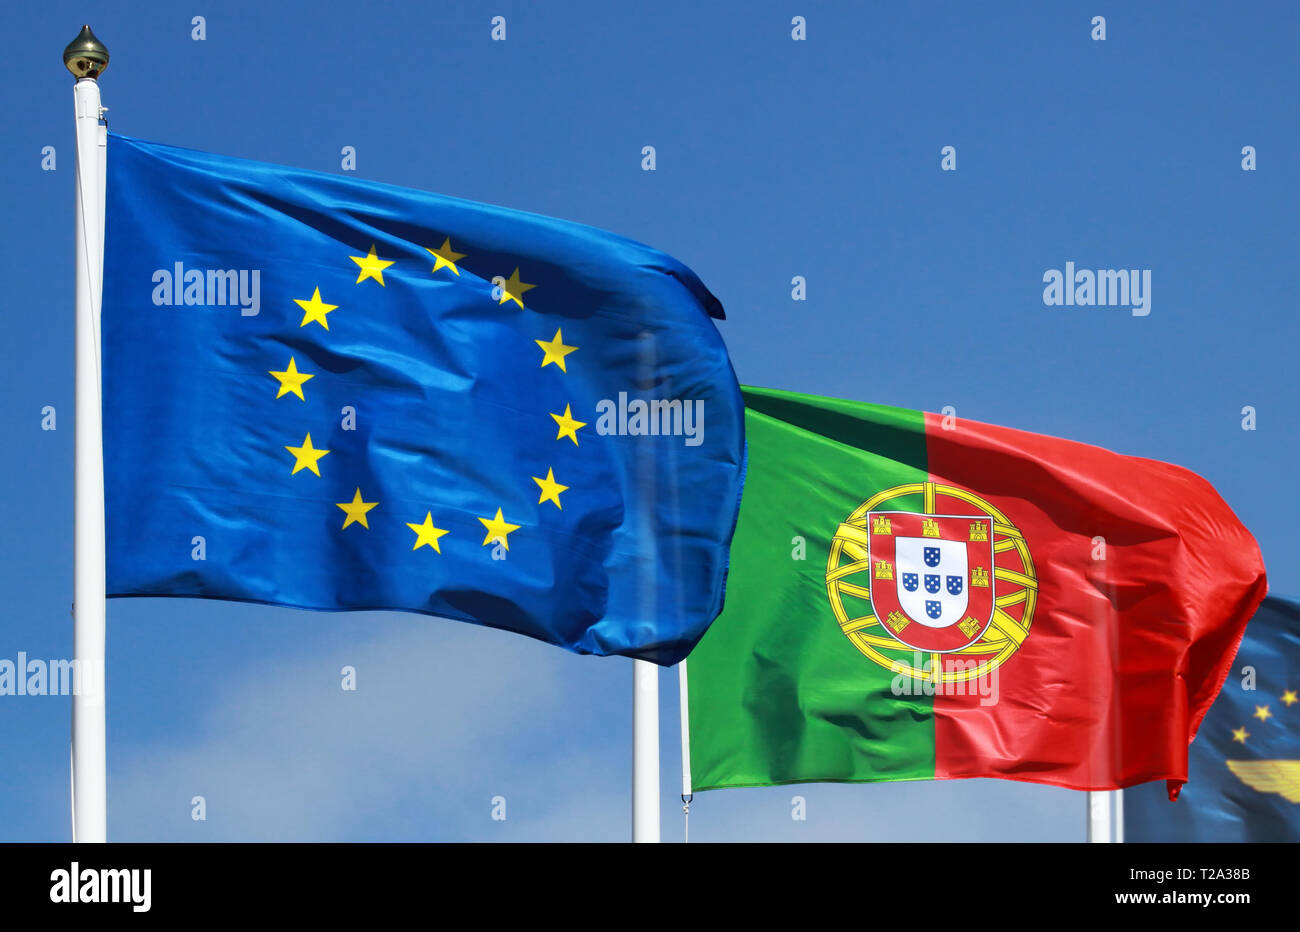 Pavillon du Portugal et de l'Union européenne dans le soleil Banque D'Images